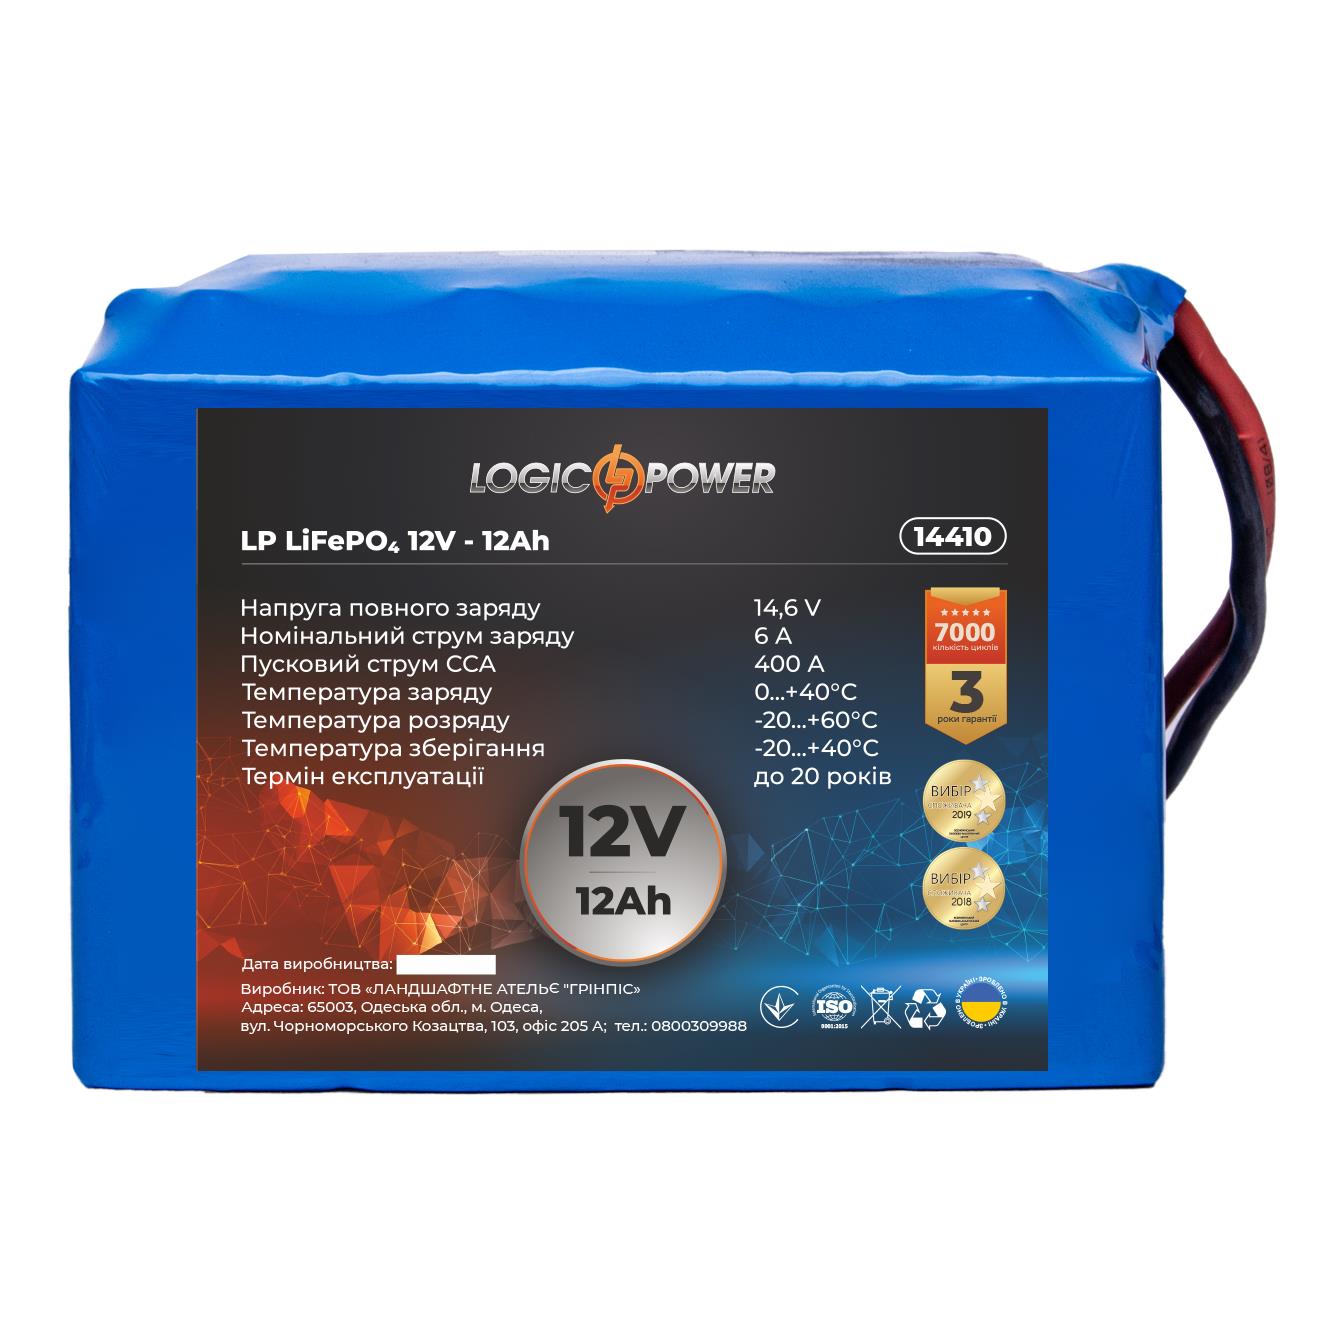 Акумулятор літій-залізо-фосфатний LogicPower LP LiFePO4 12V - 12 Ah для мопеда (14410)